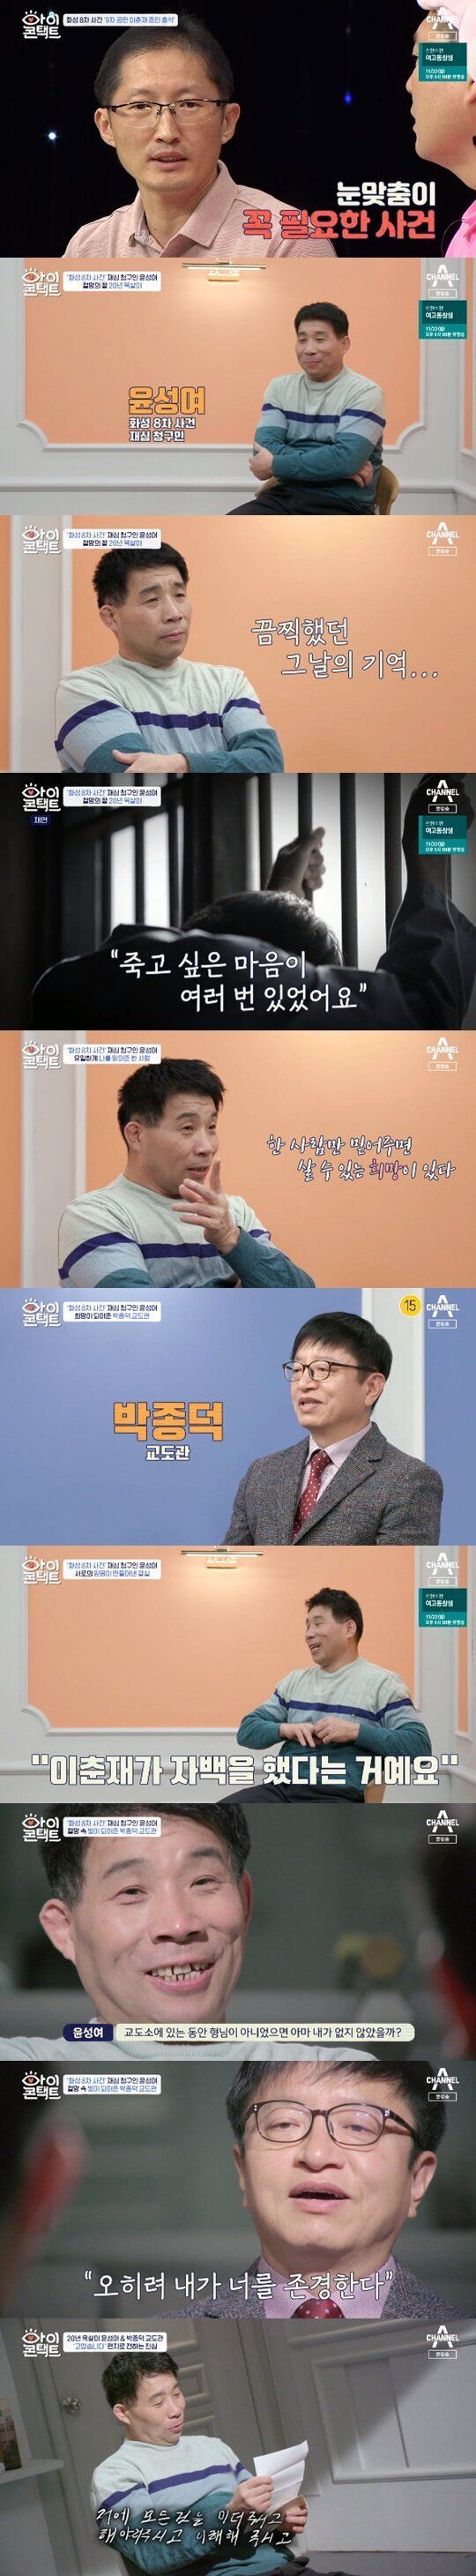 채널A 예능 프로그램 '아이콘택트'에 출연한 윤성여씨와 박종덕 교도관.